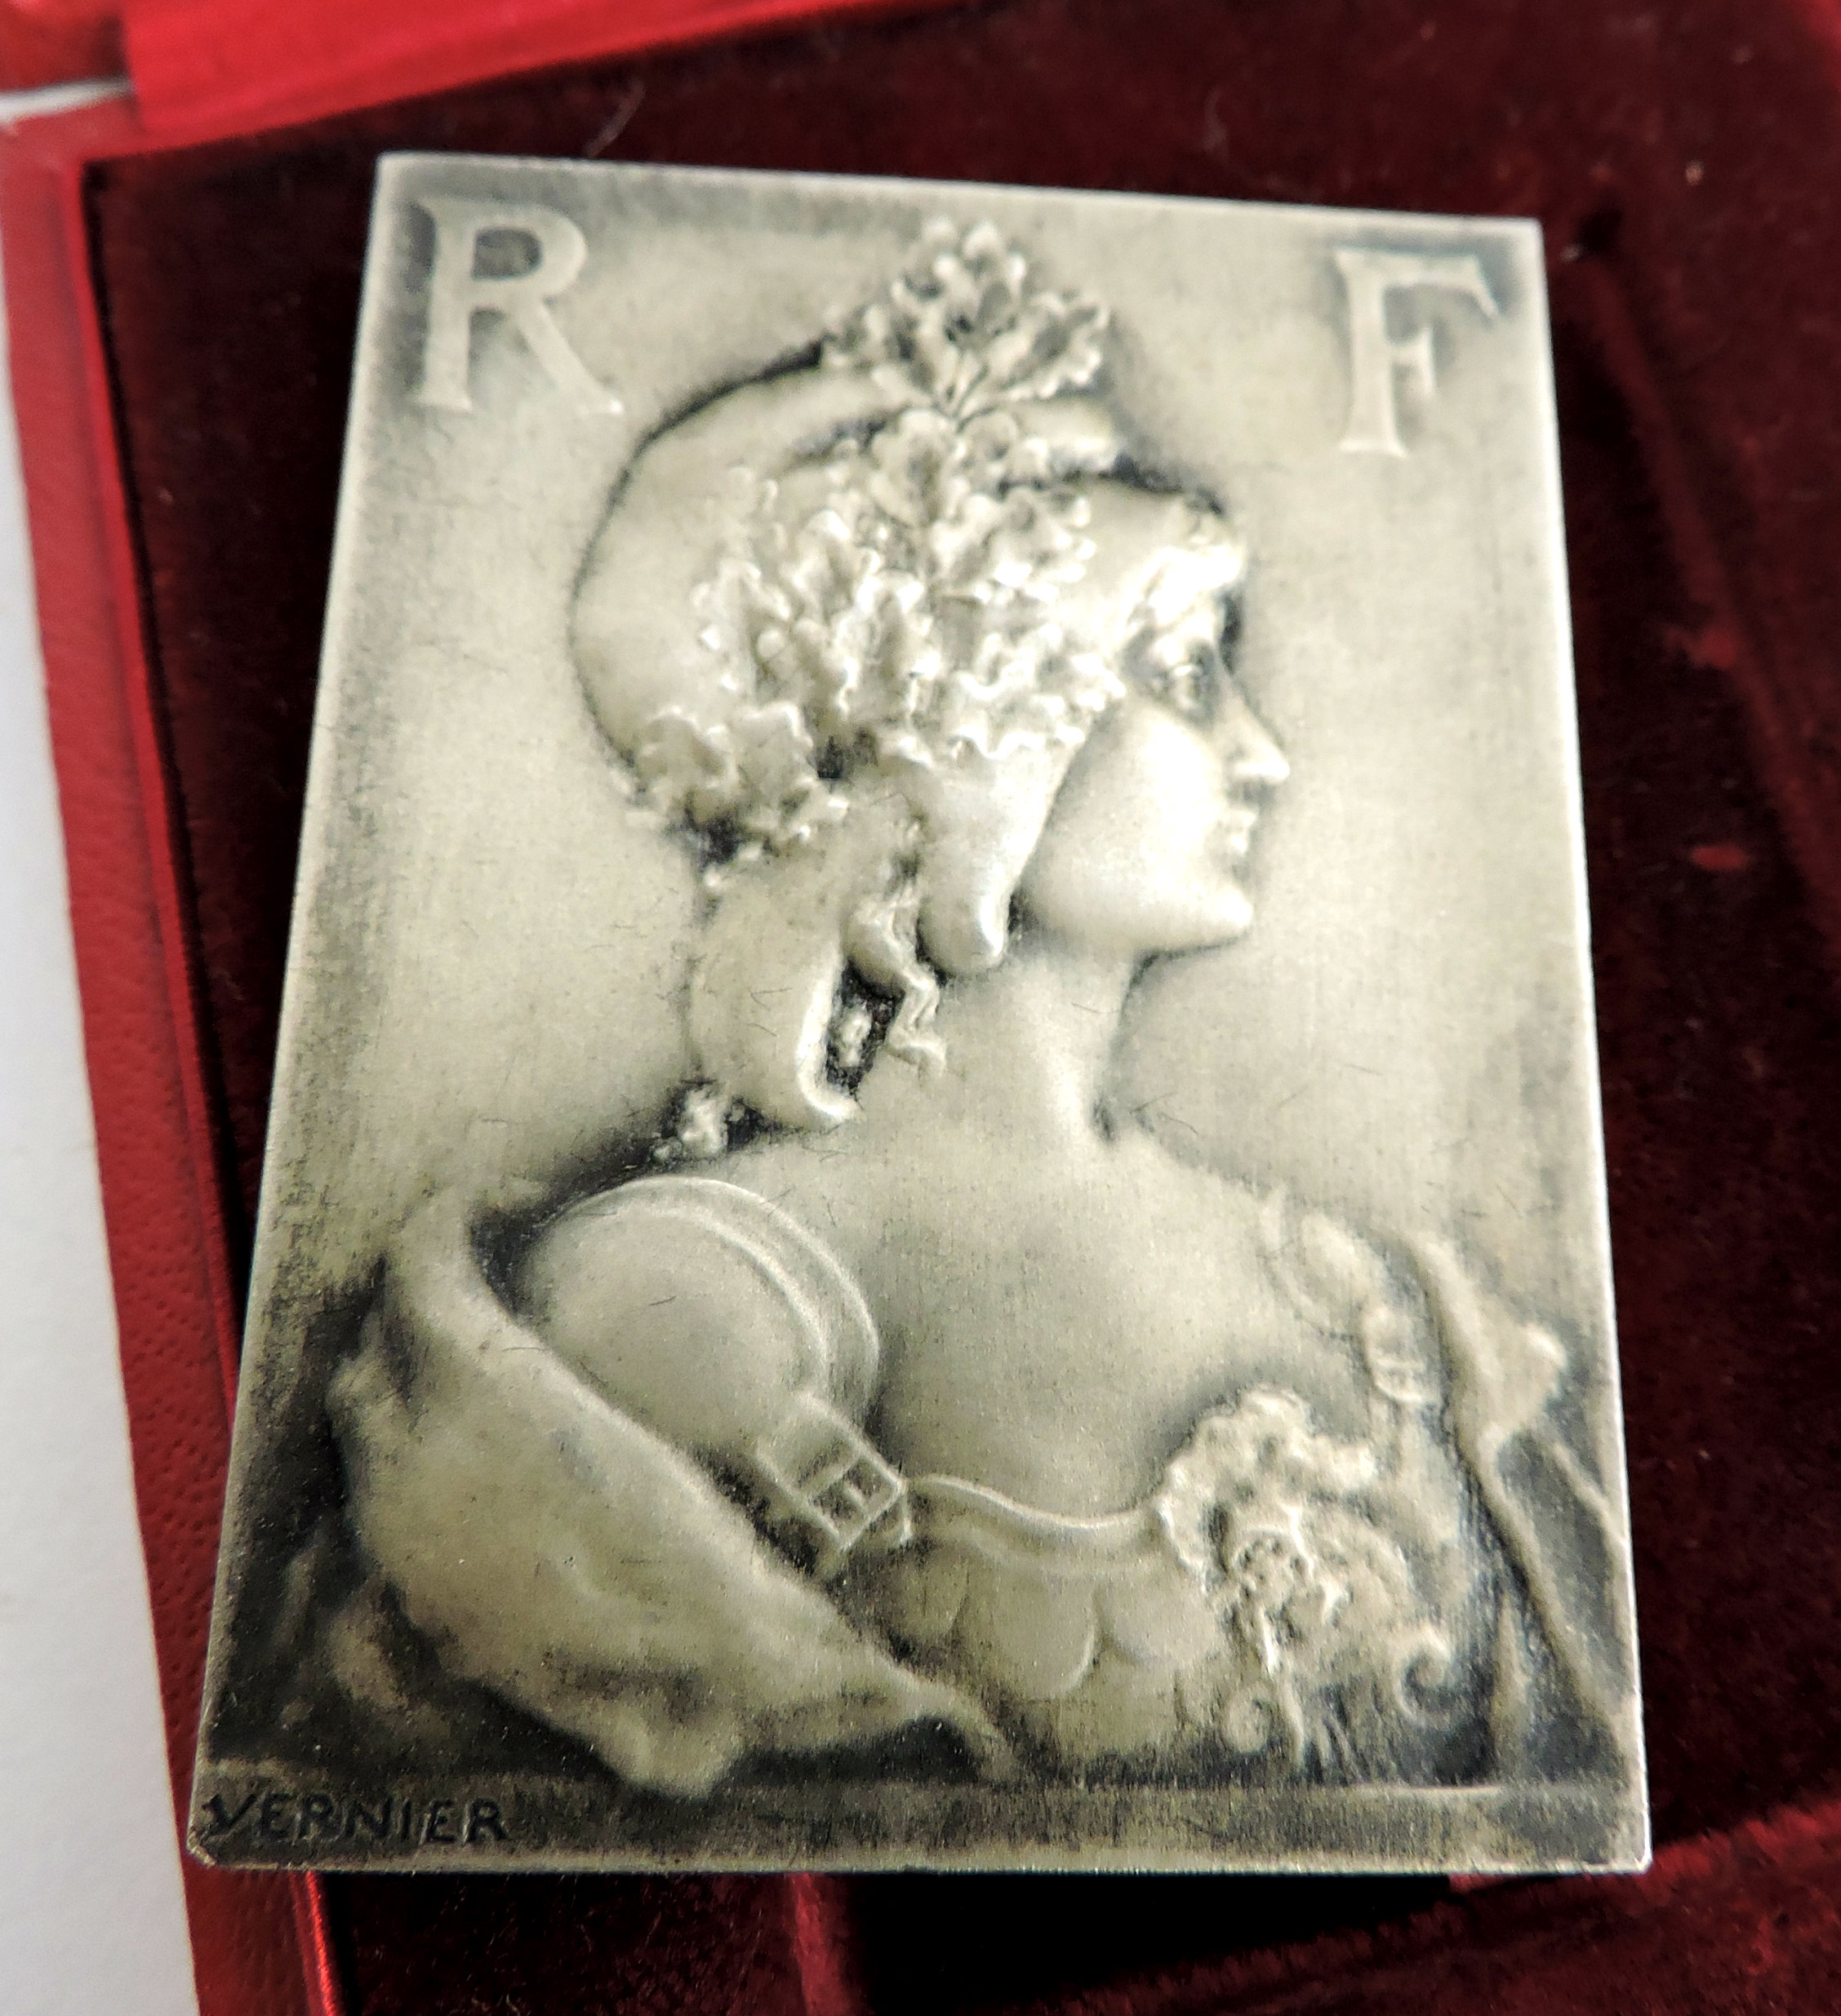 M&eacute;daille de la Presse R&eacute;publicaine p&eacute;riodique 1888-1913  Vernier Bronze argent&eacute;